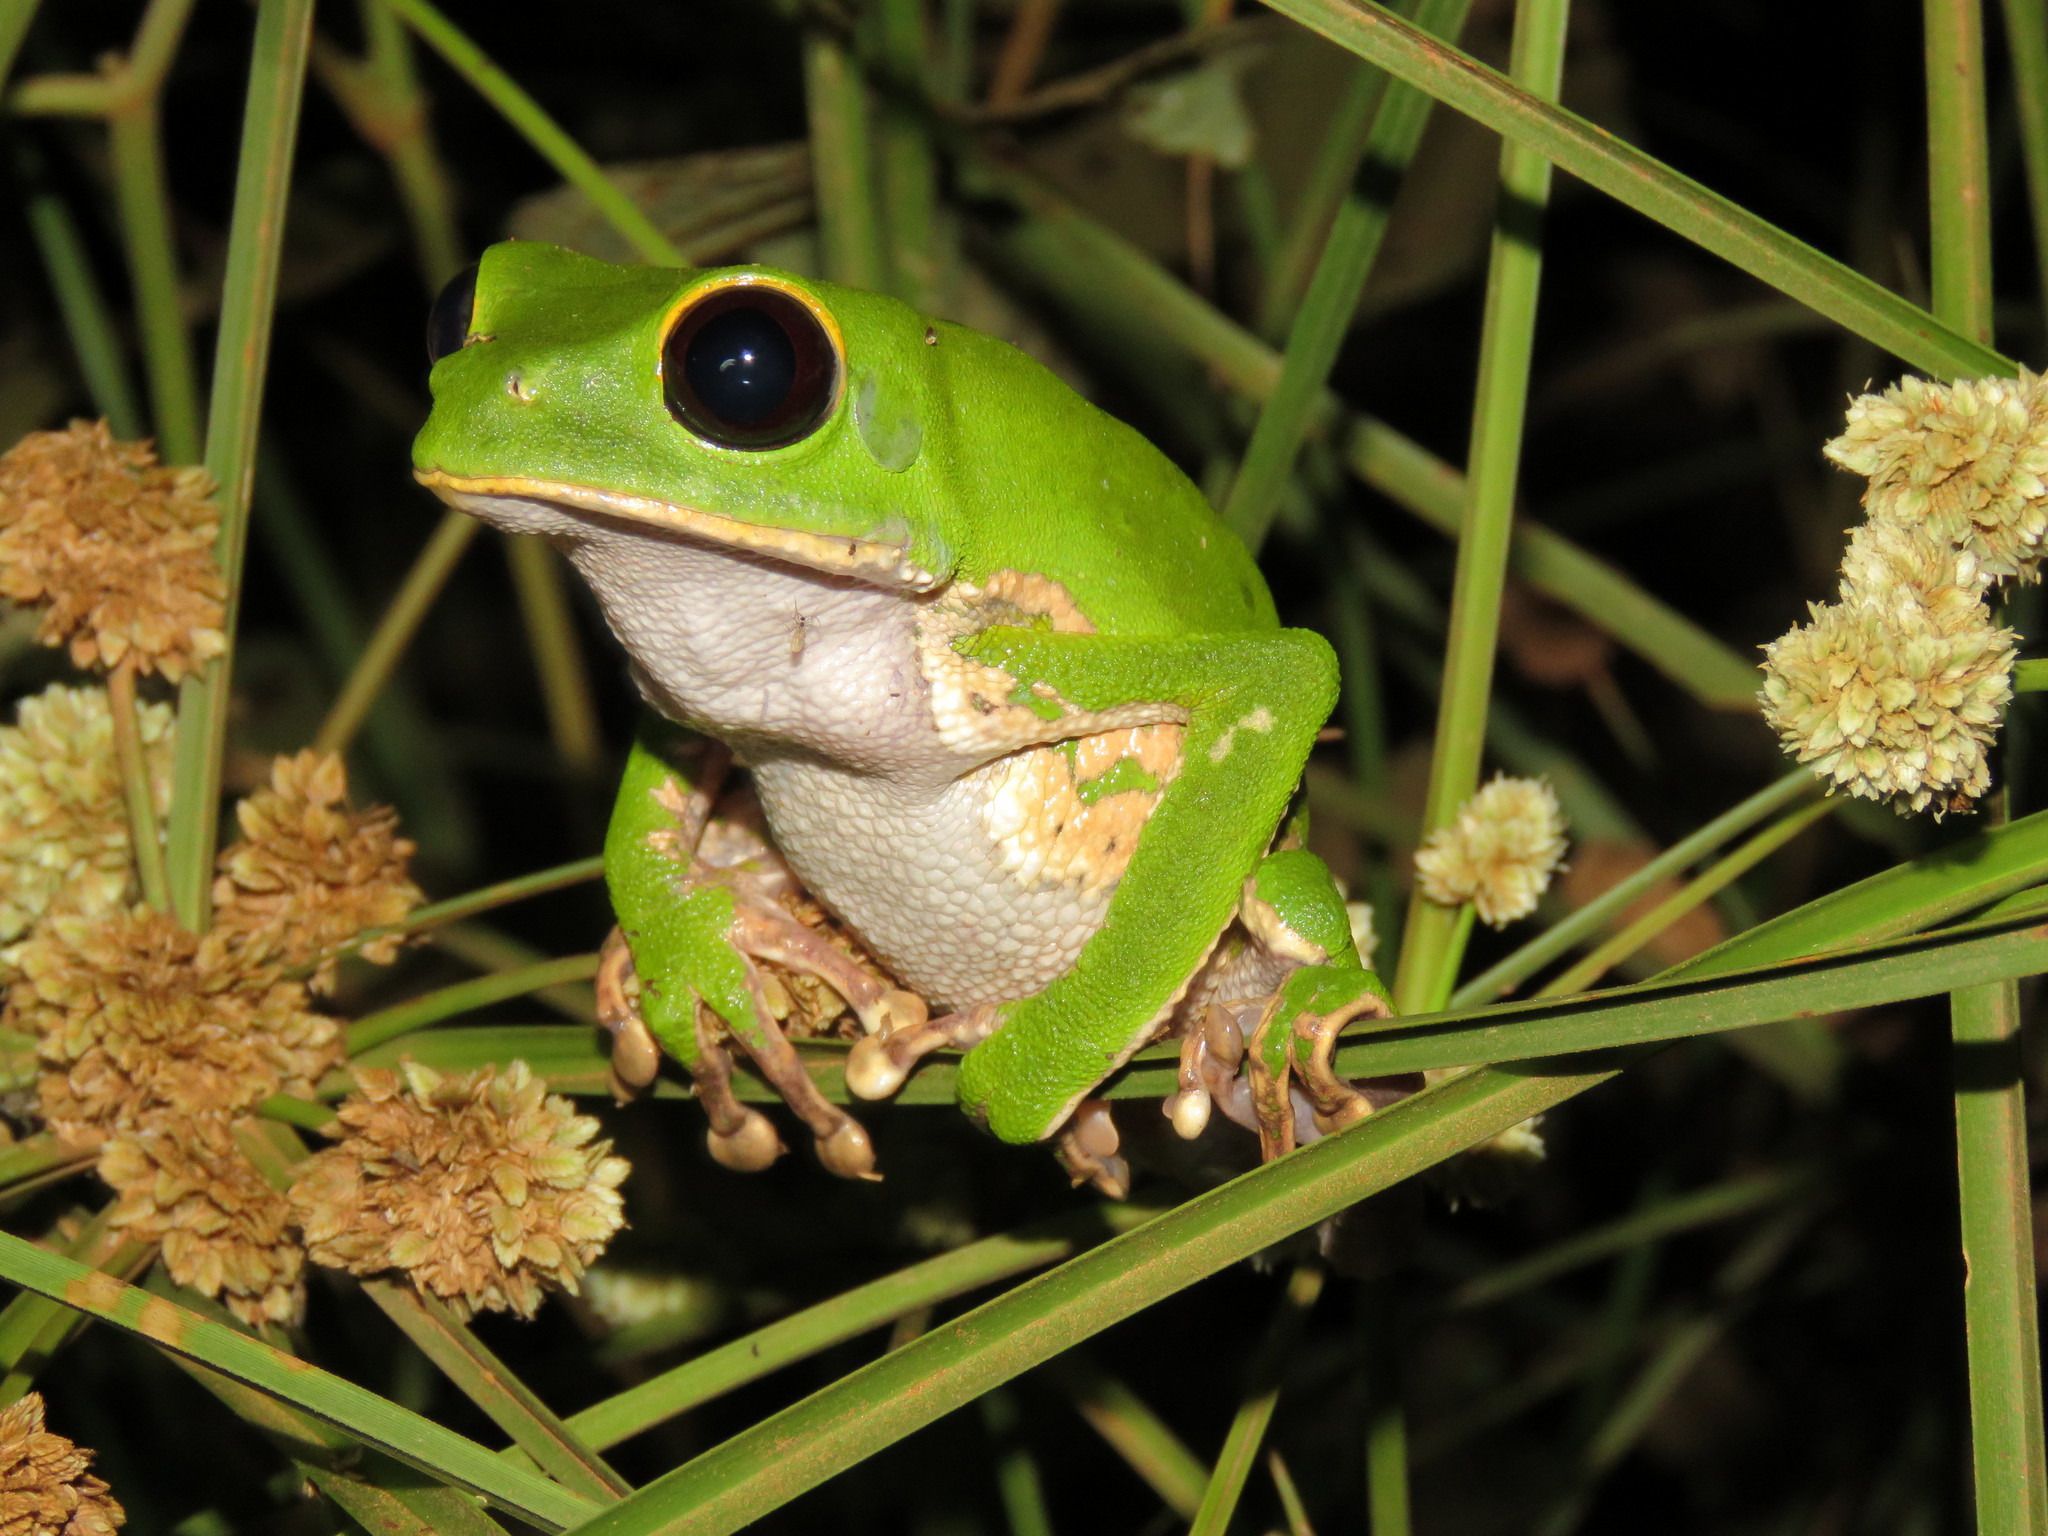 Рідкісну жабу виявили біологи в Бразилії. Даному виду загрожує небезпека через фрагментації лісу.